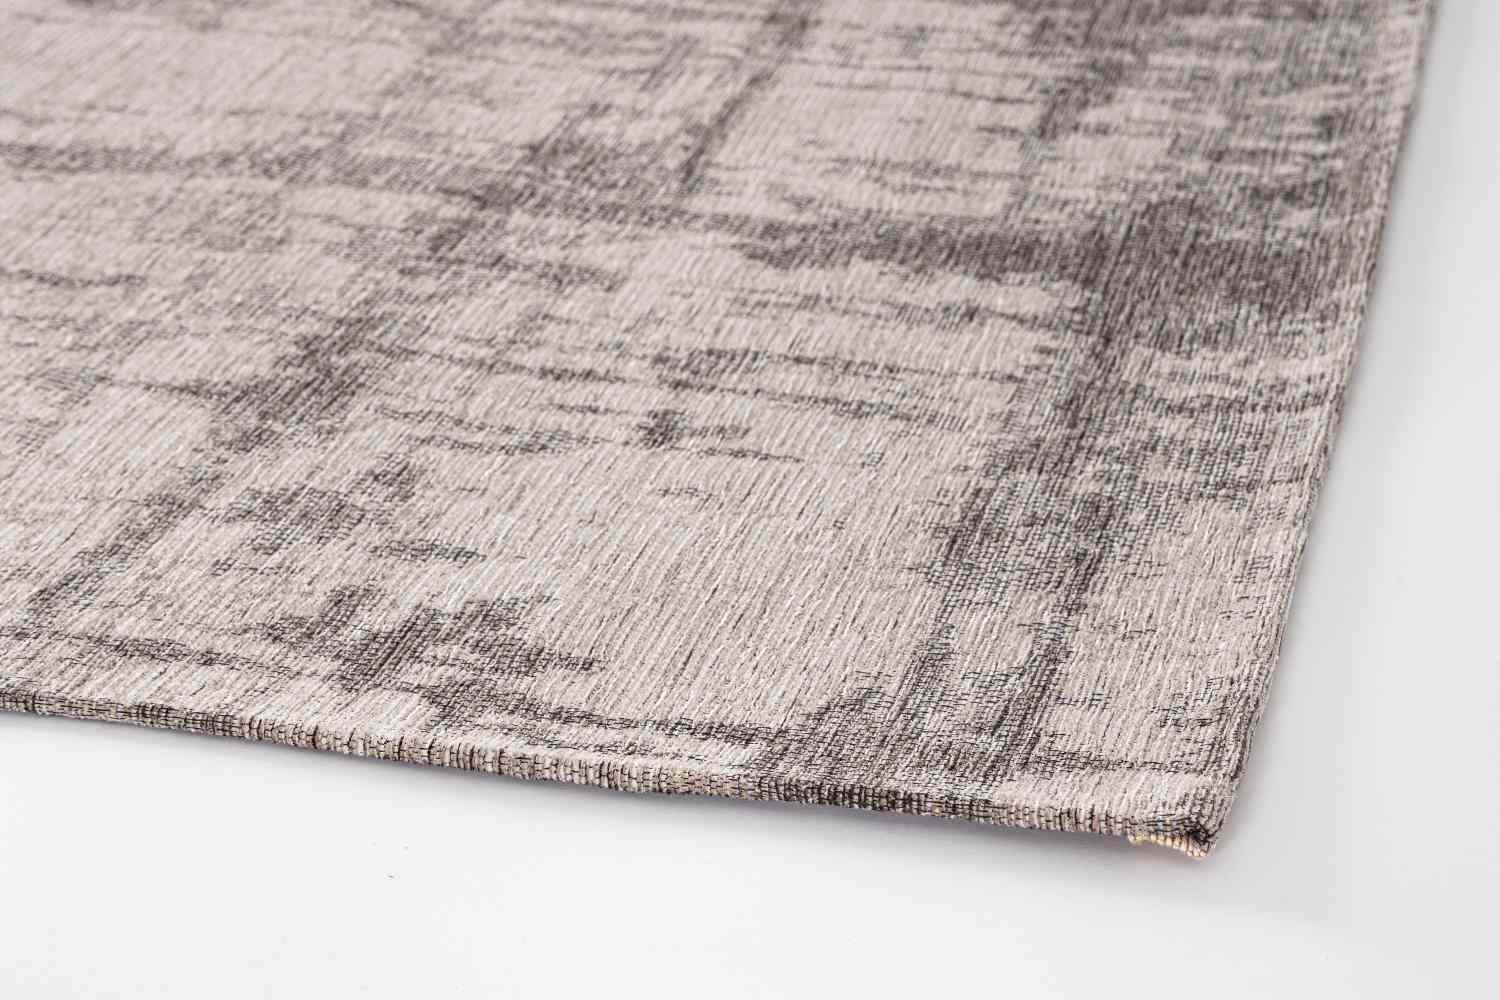 Der Teppich Yuno überzeugt mit seinem modernen Design. Gefertigt wurde die Vorderseite aus 50% Chenille, 30% Polyester und 20% Baumwolle, die Rückseite ist aus Latex. Der Teppich besitzt eine grauen Farbton und die Maße von 200x290 cm.